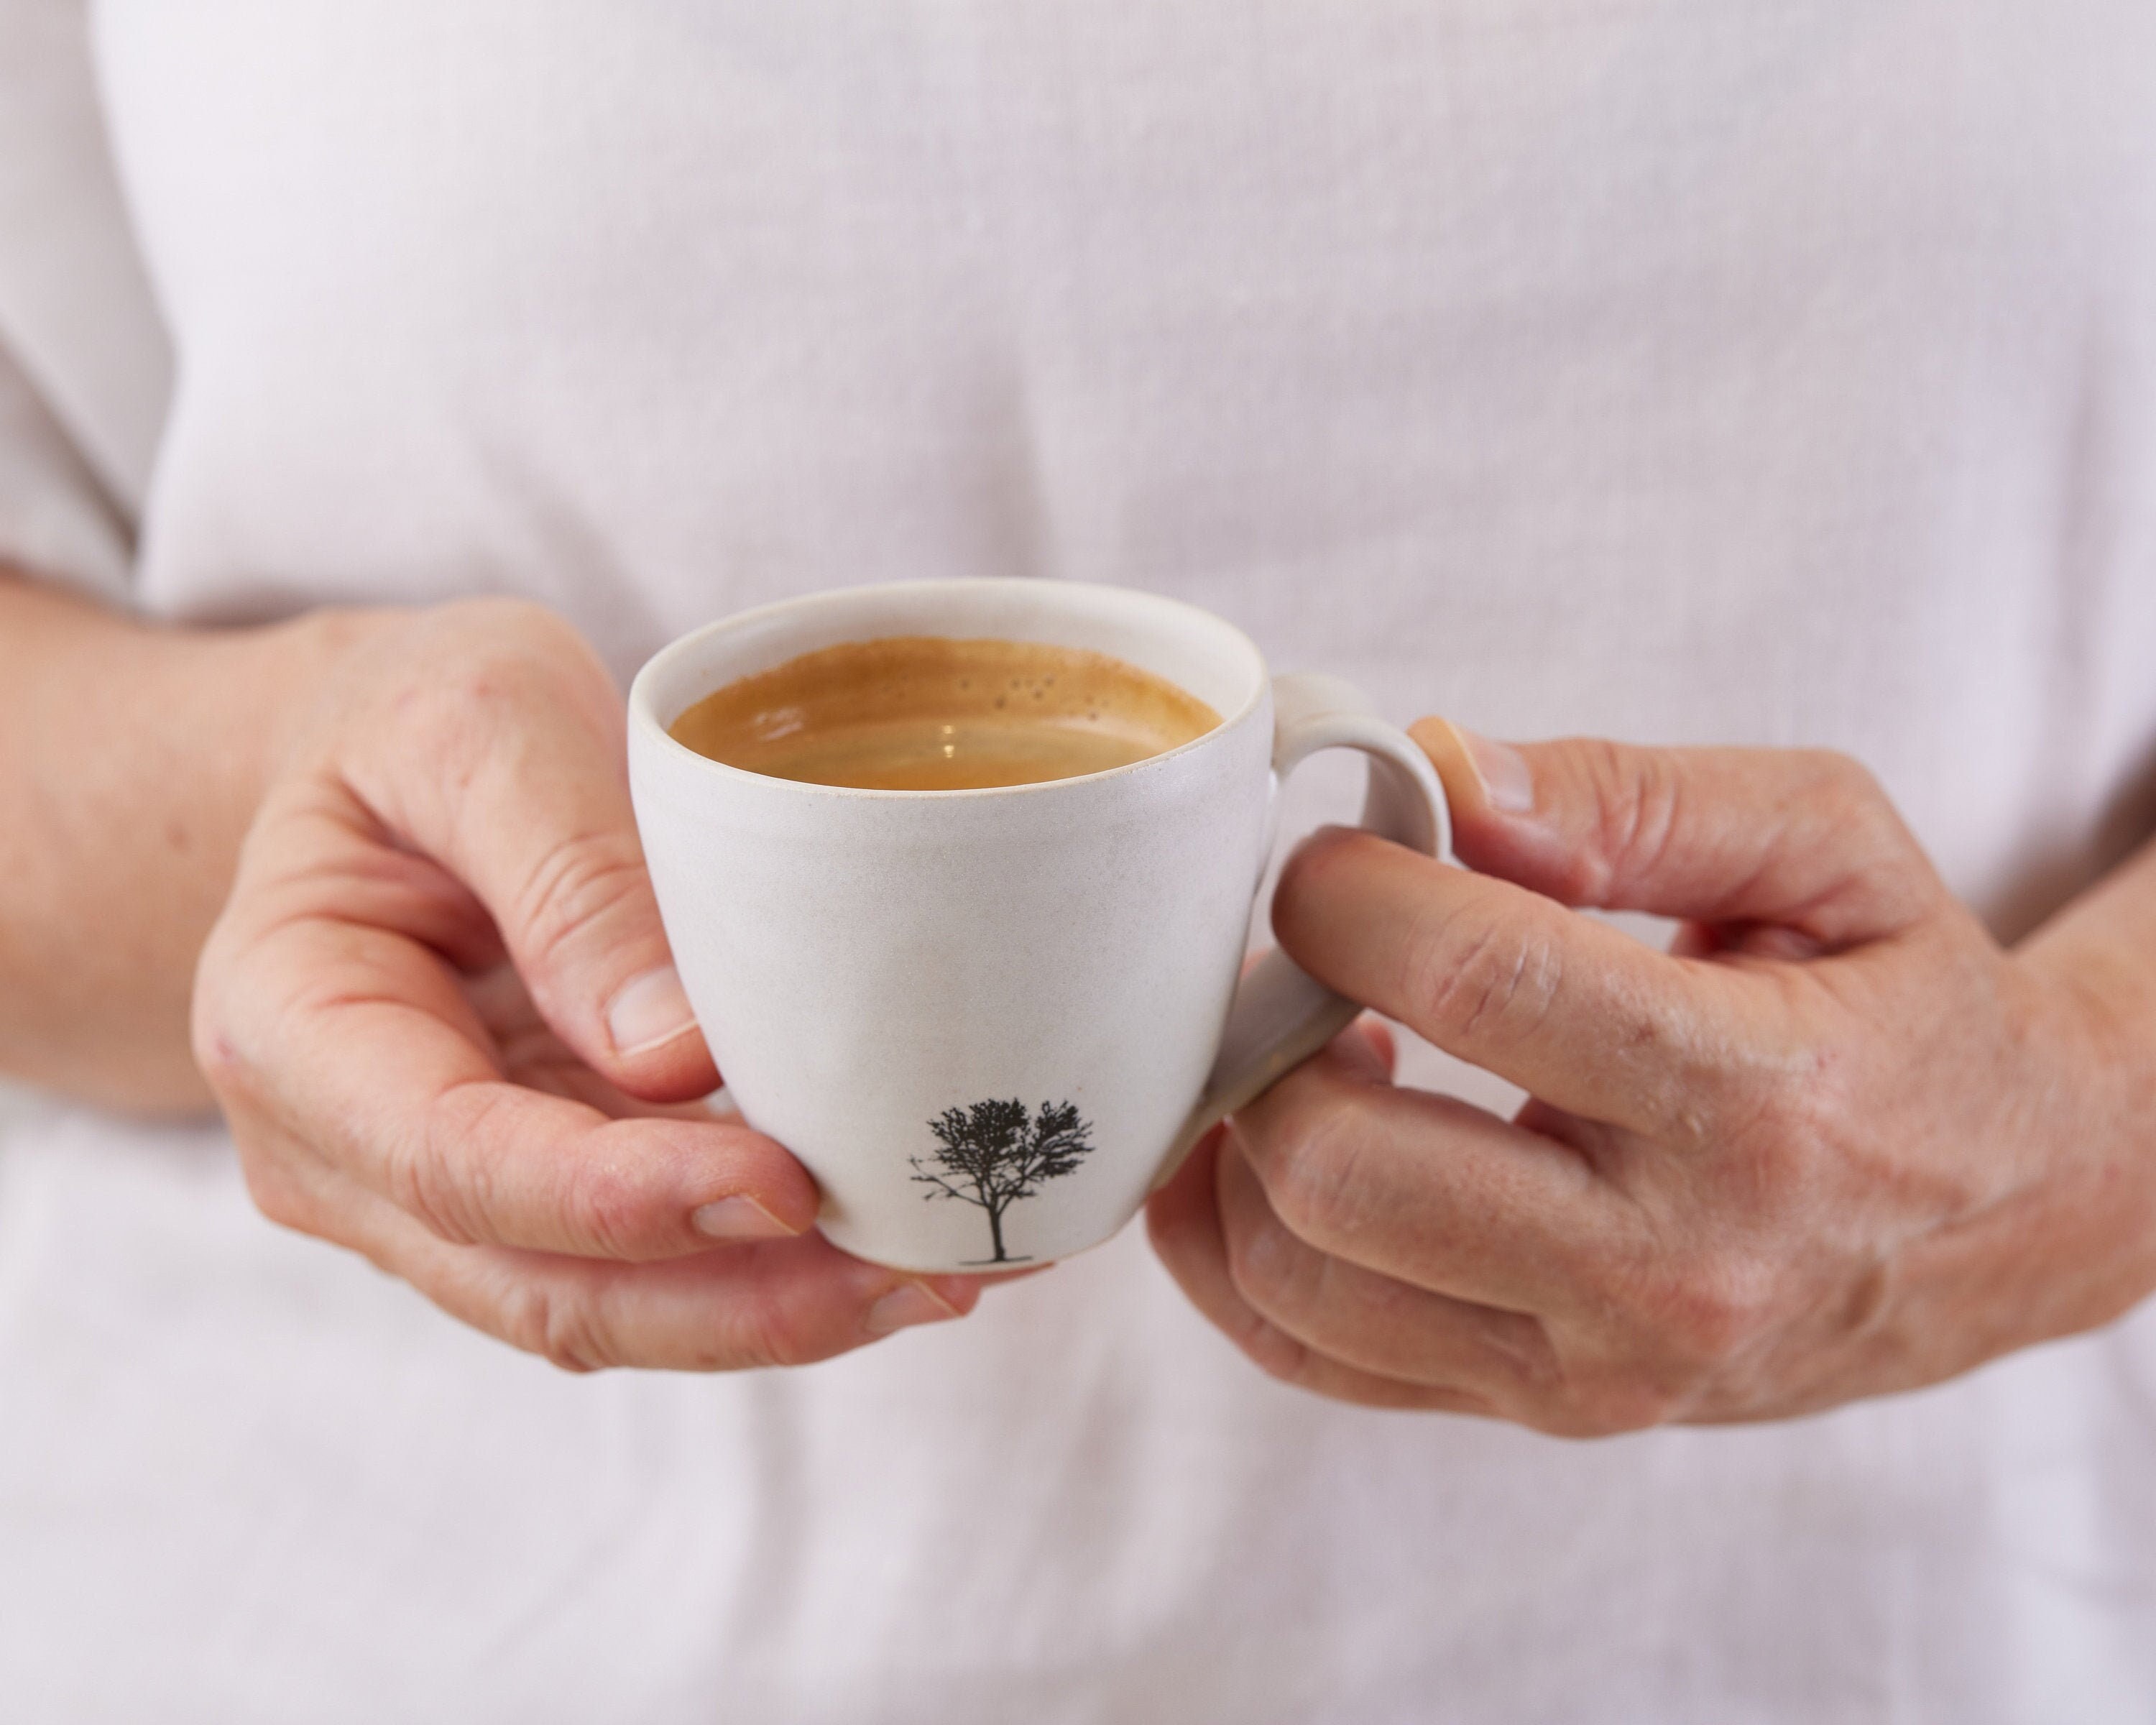 Espresso Coffee Hand Made Clay Cups ROSE-CELESTE Set of 4 